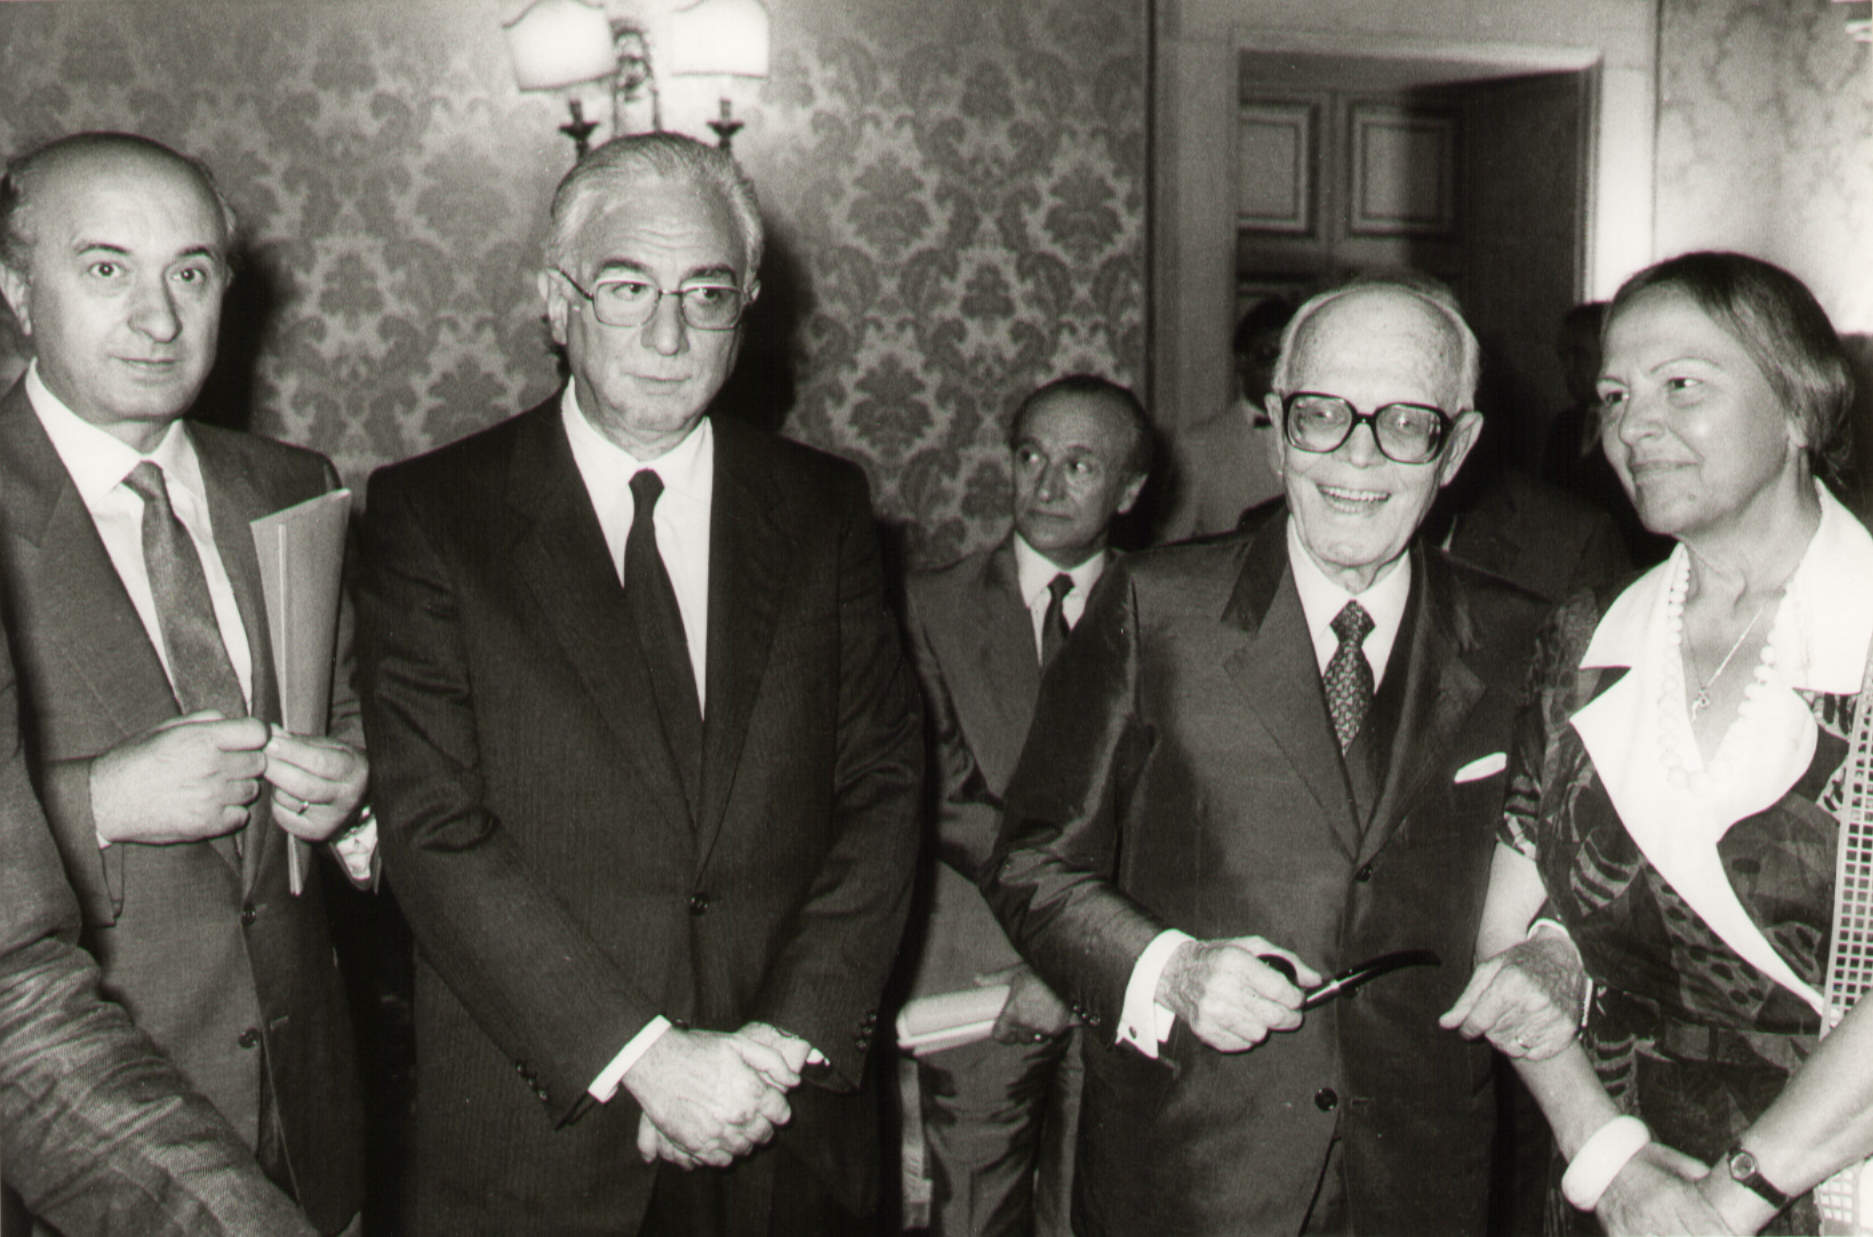   1985. Elezione alla Presidenza della Repubblica, con Sandro Pertini, Nilde Iotti e Ciriaco De Mita. In secondo piano: Alessandro Natta.